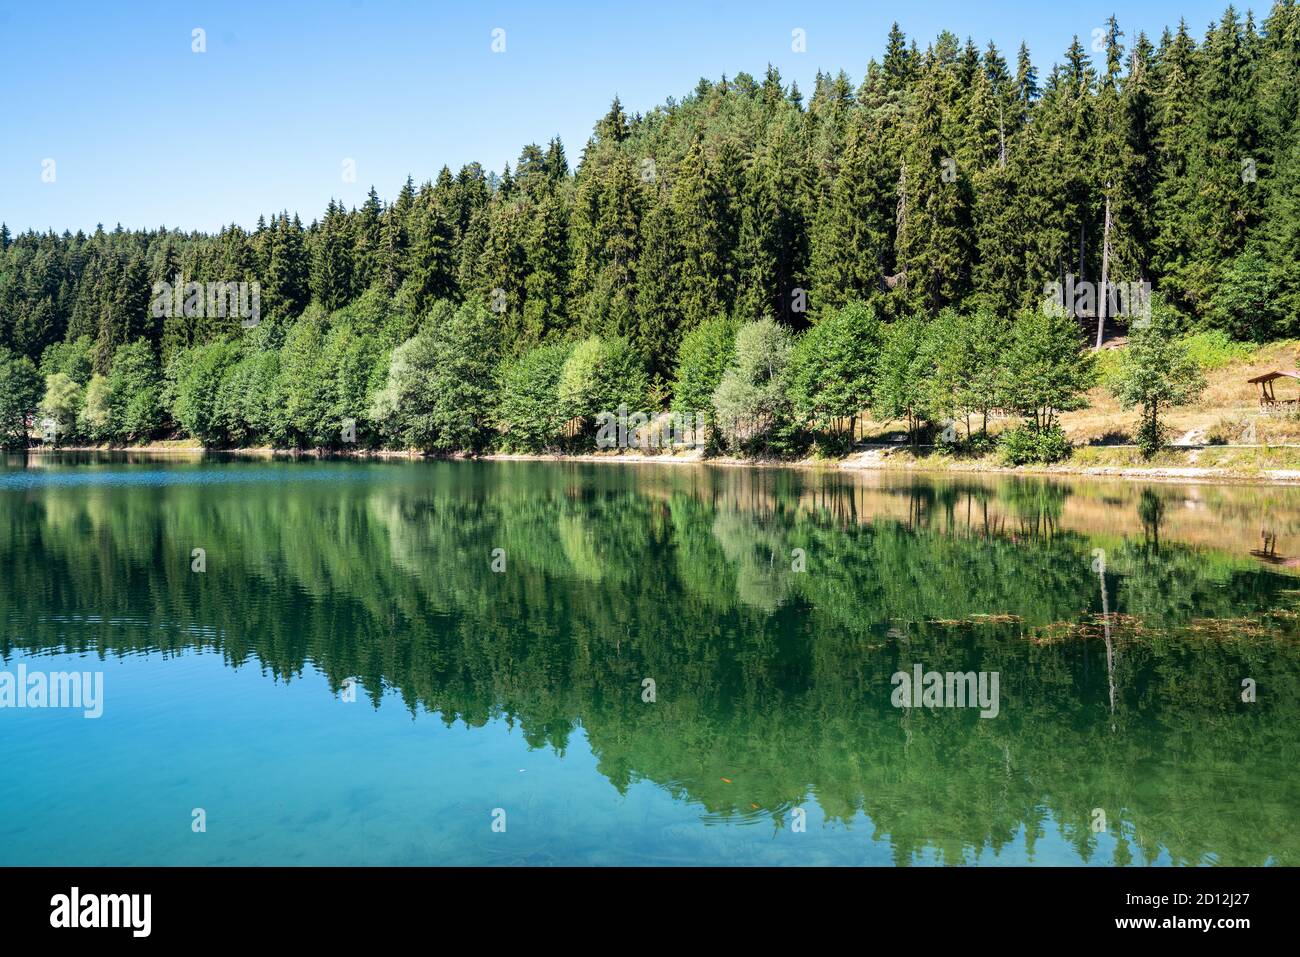 Belle vue sur un lac et une forêt sous un ciel bleu clair. Nature et tourisme concept. Photo de haute qualité Banque D'Images